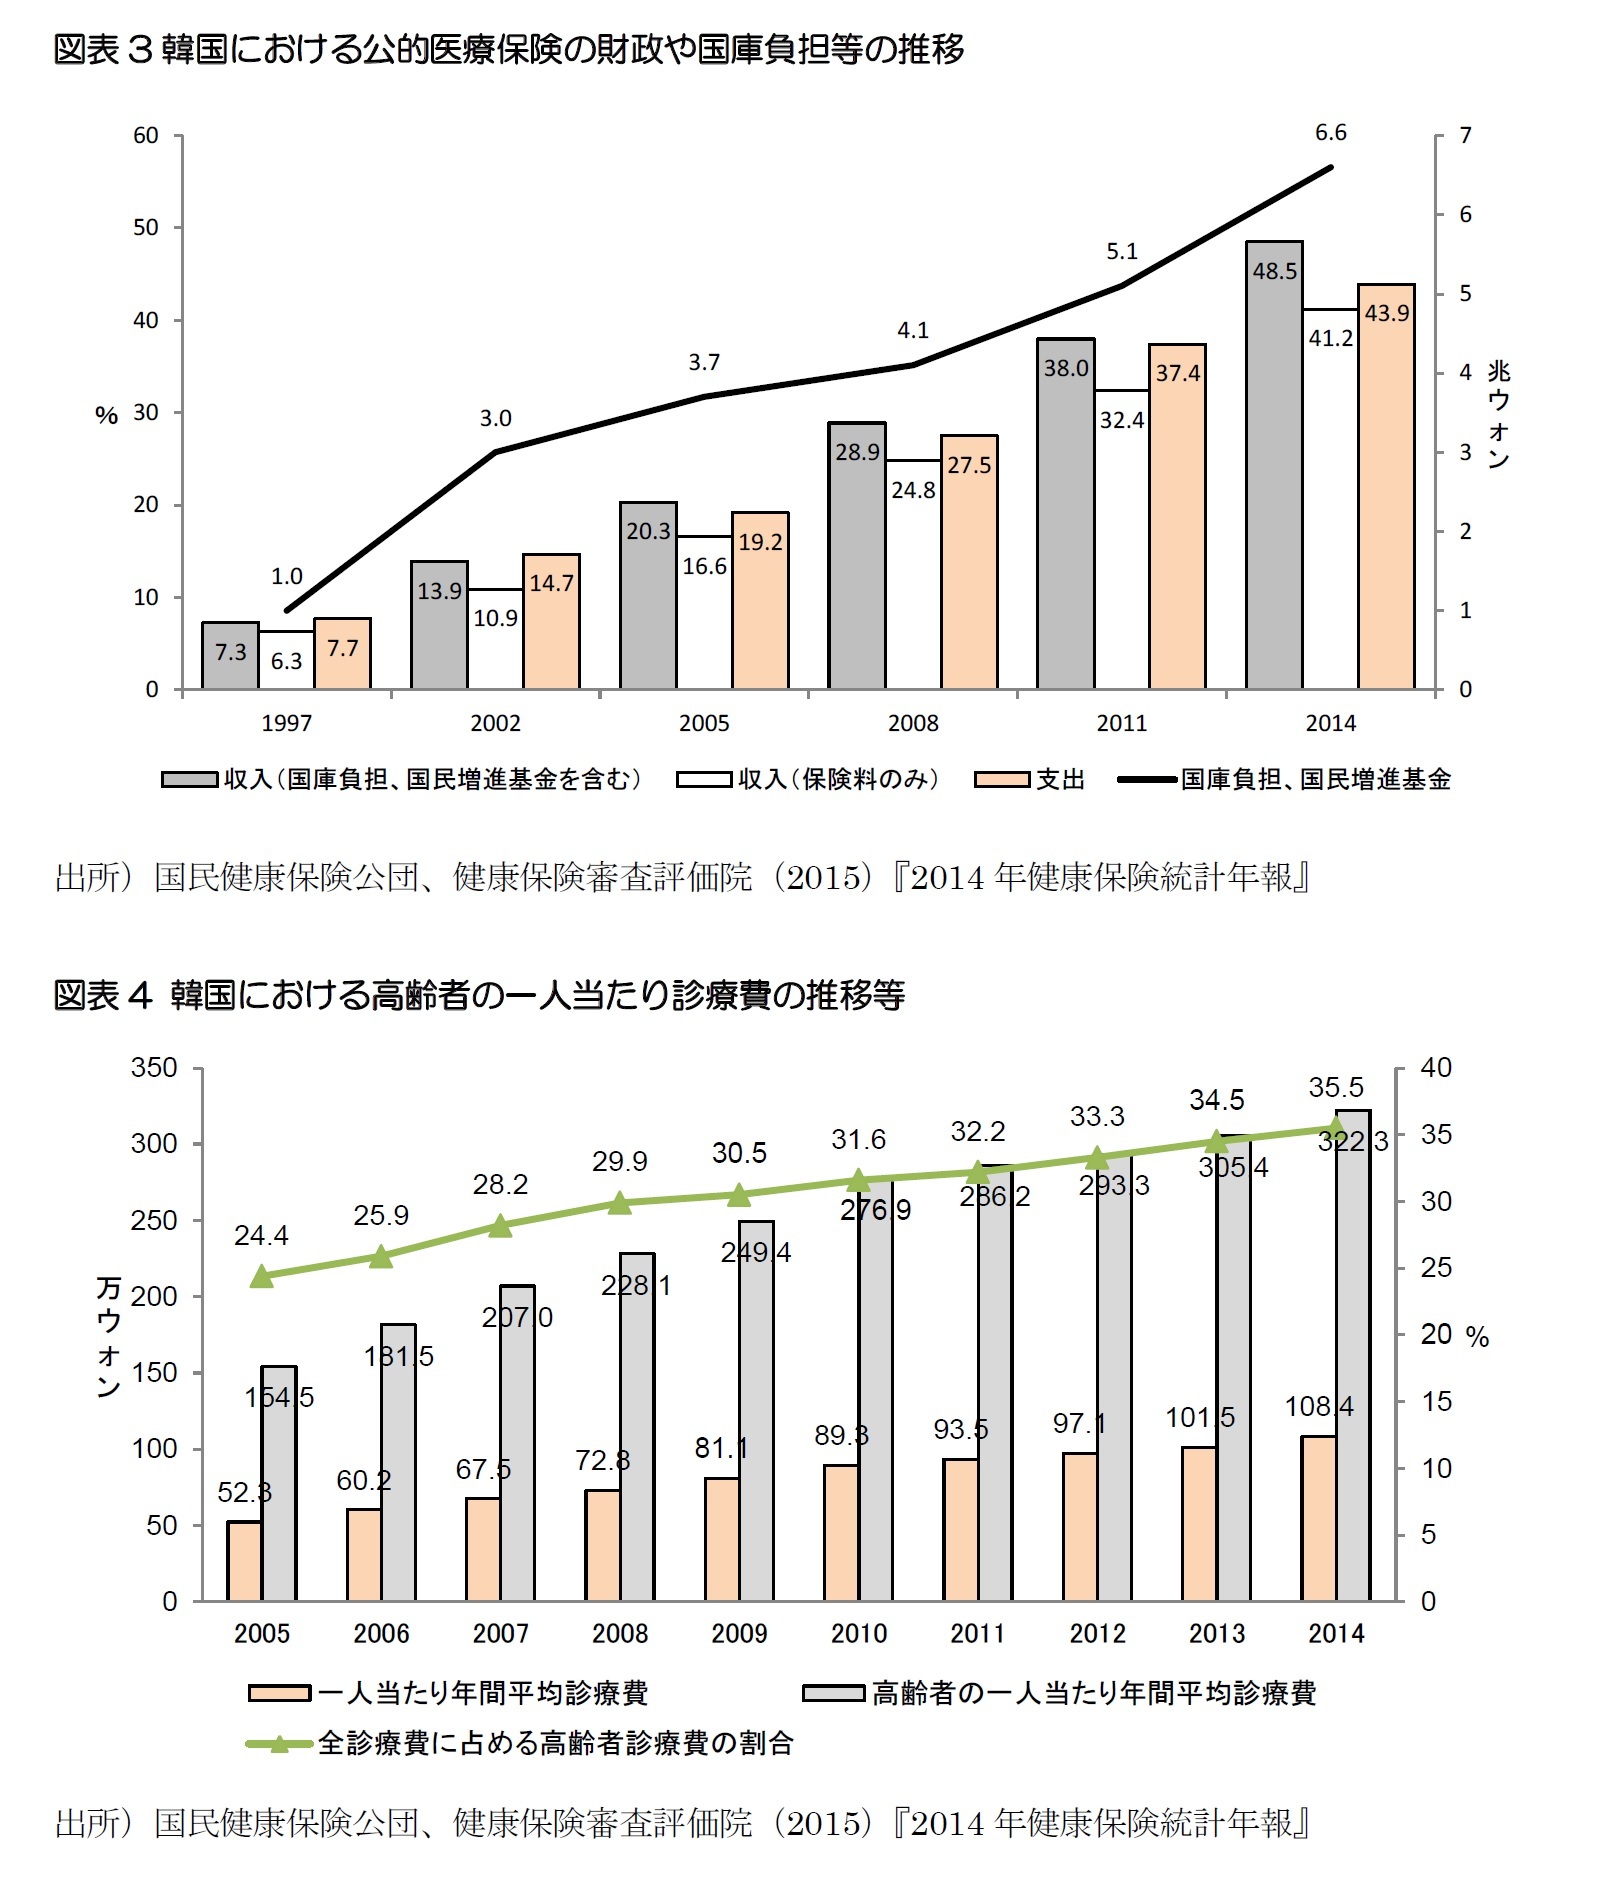 図表3韓国における公的医療保険の財政や国庫負担等の推移/図表4 韓国における高齢者の一人当たり診療費の推移等